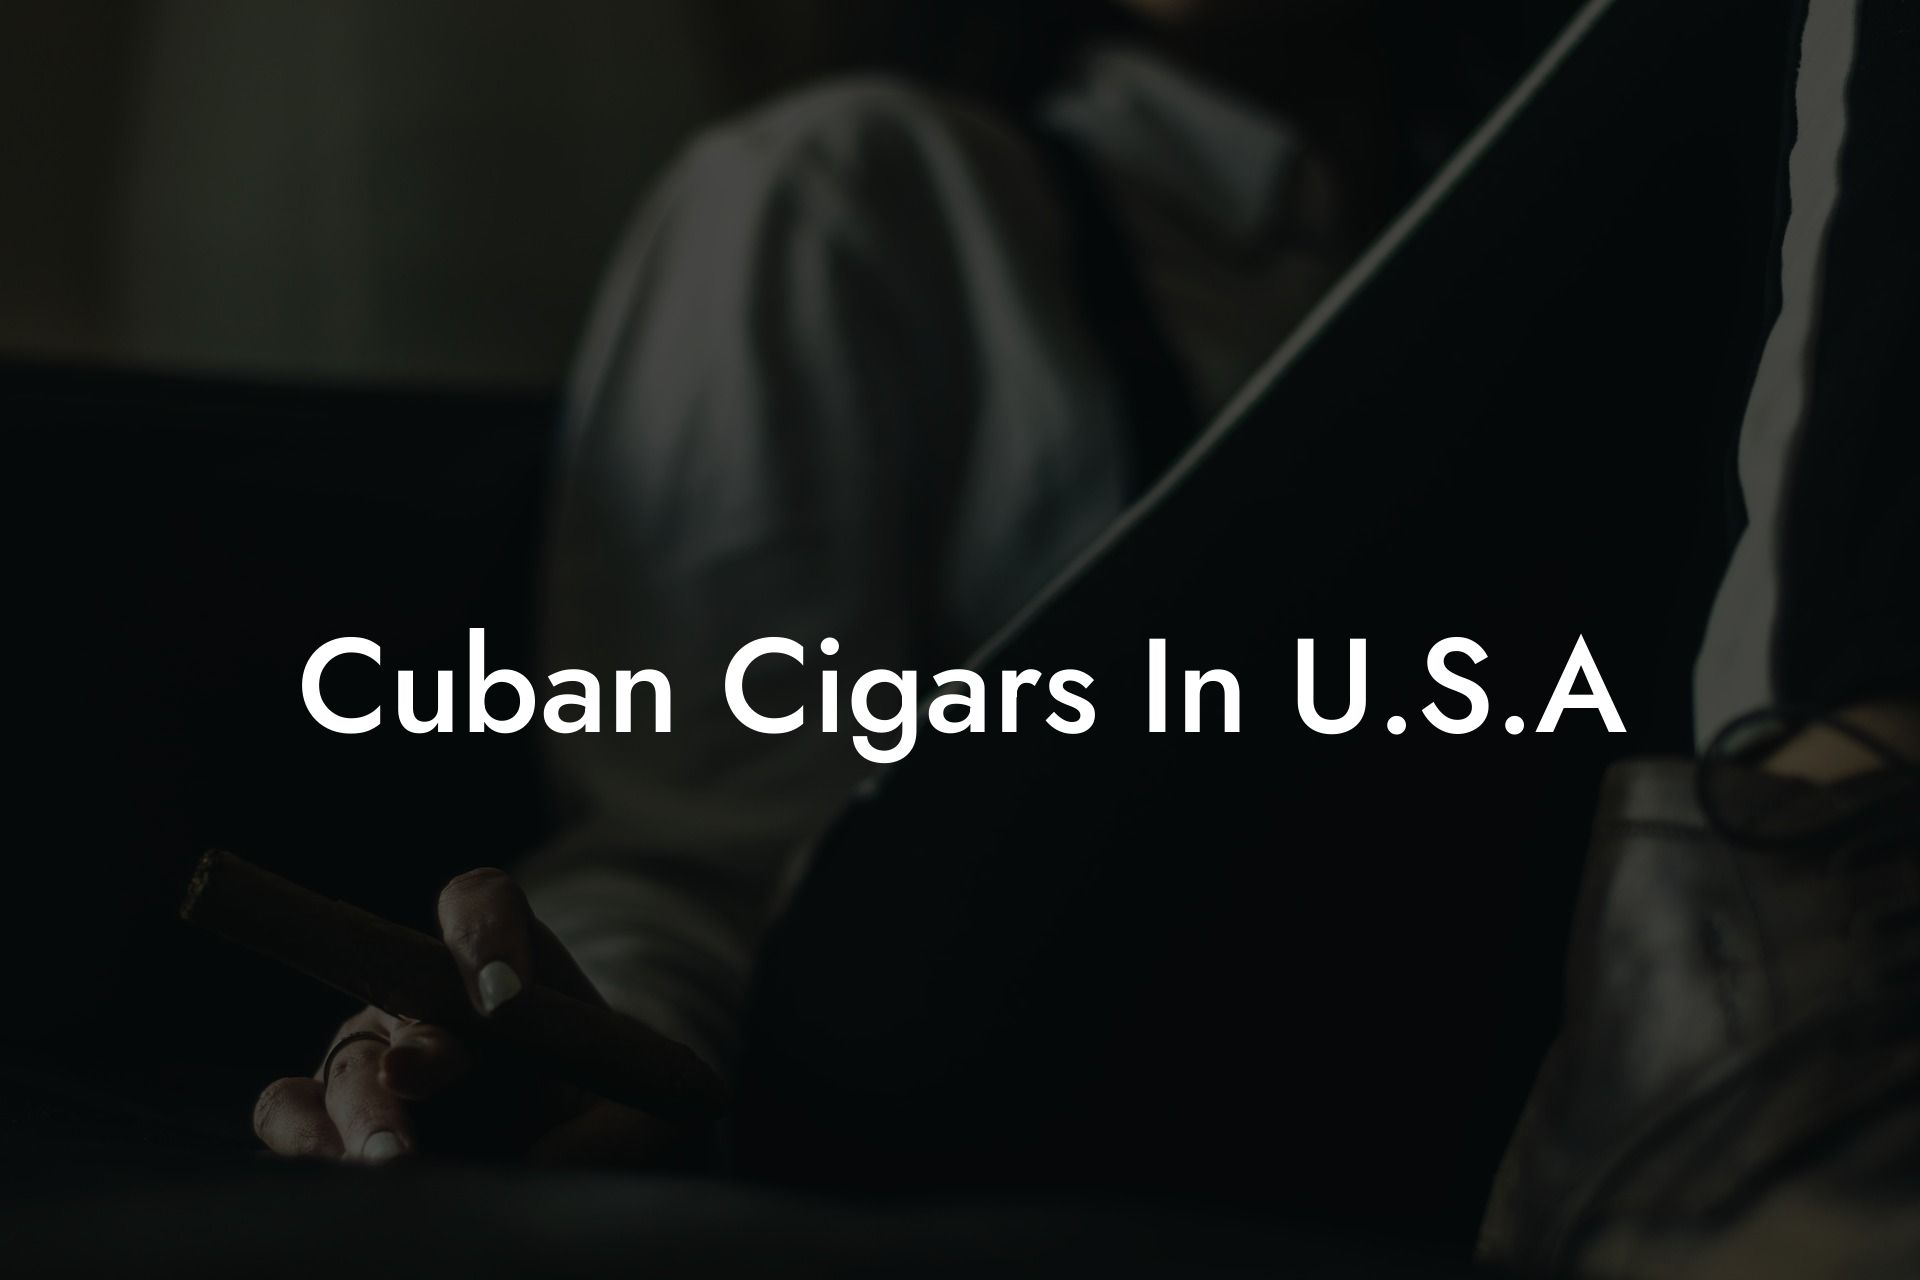 Cuban Cigars In U.S.A